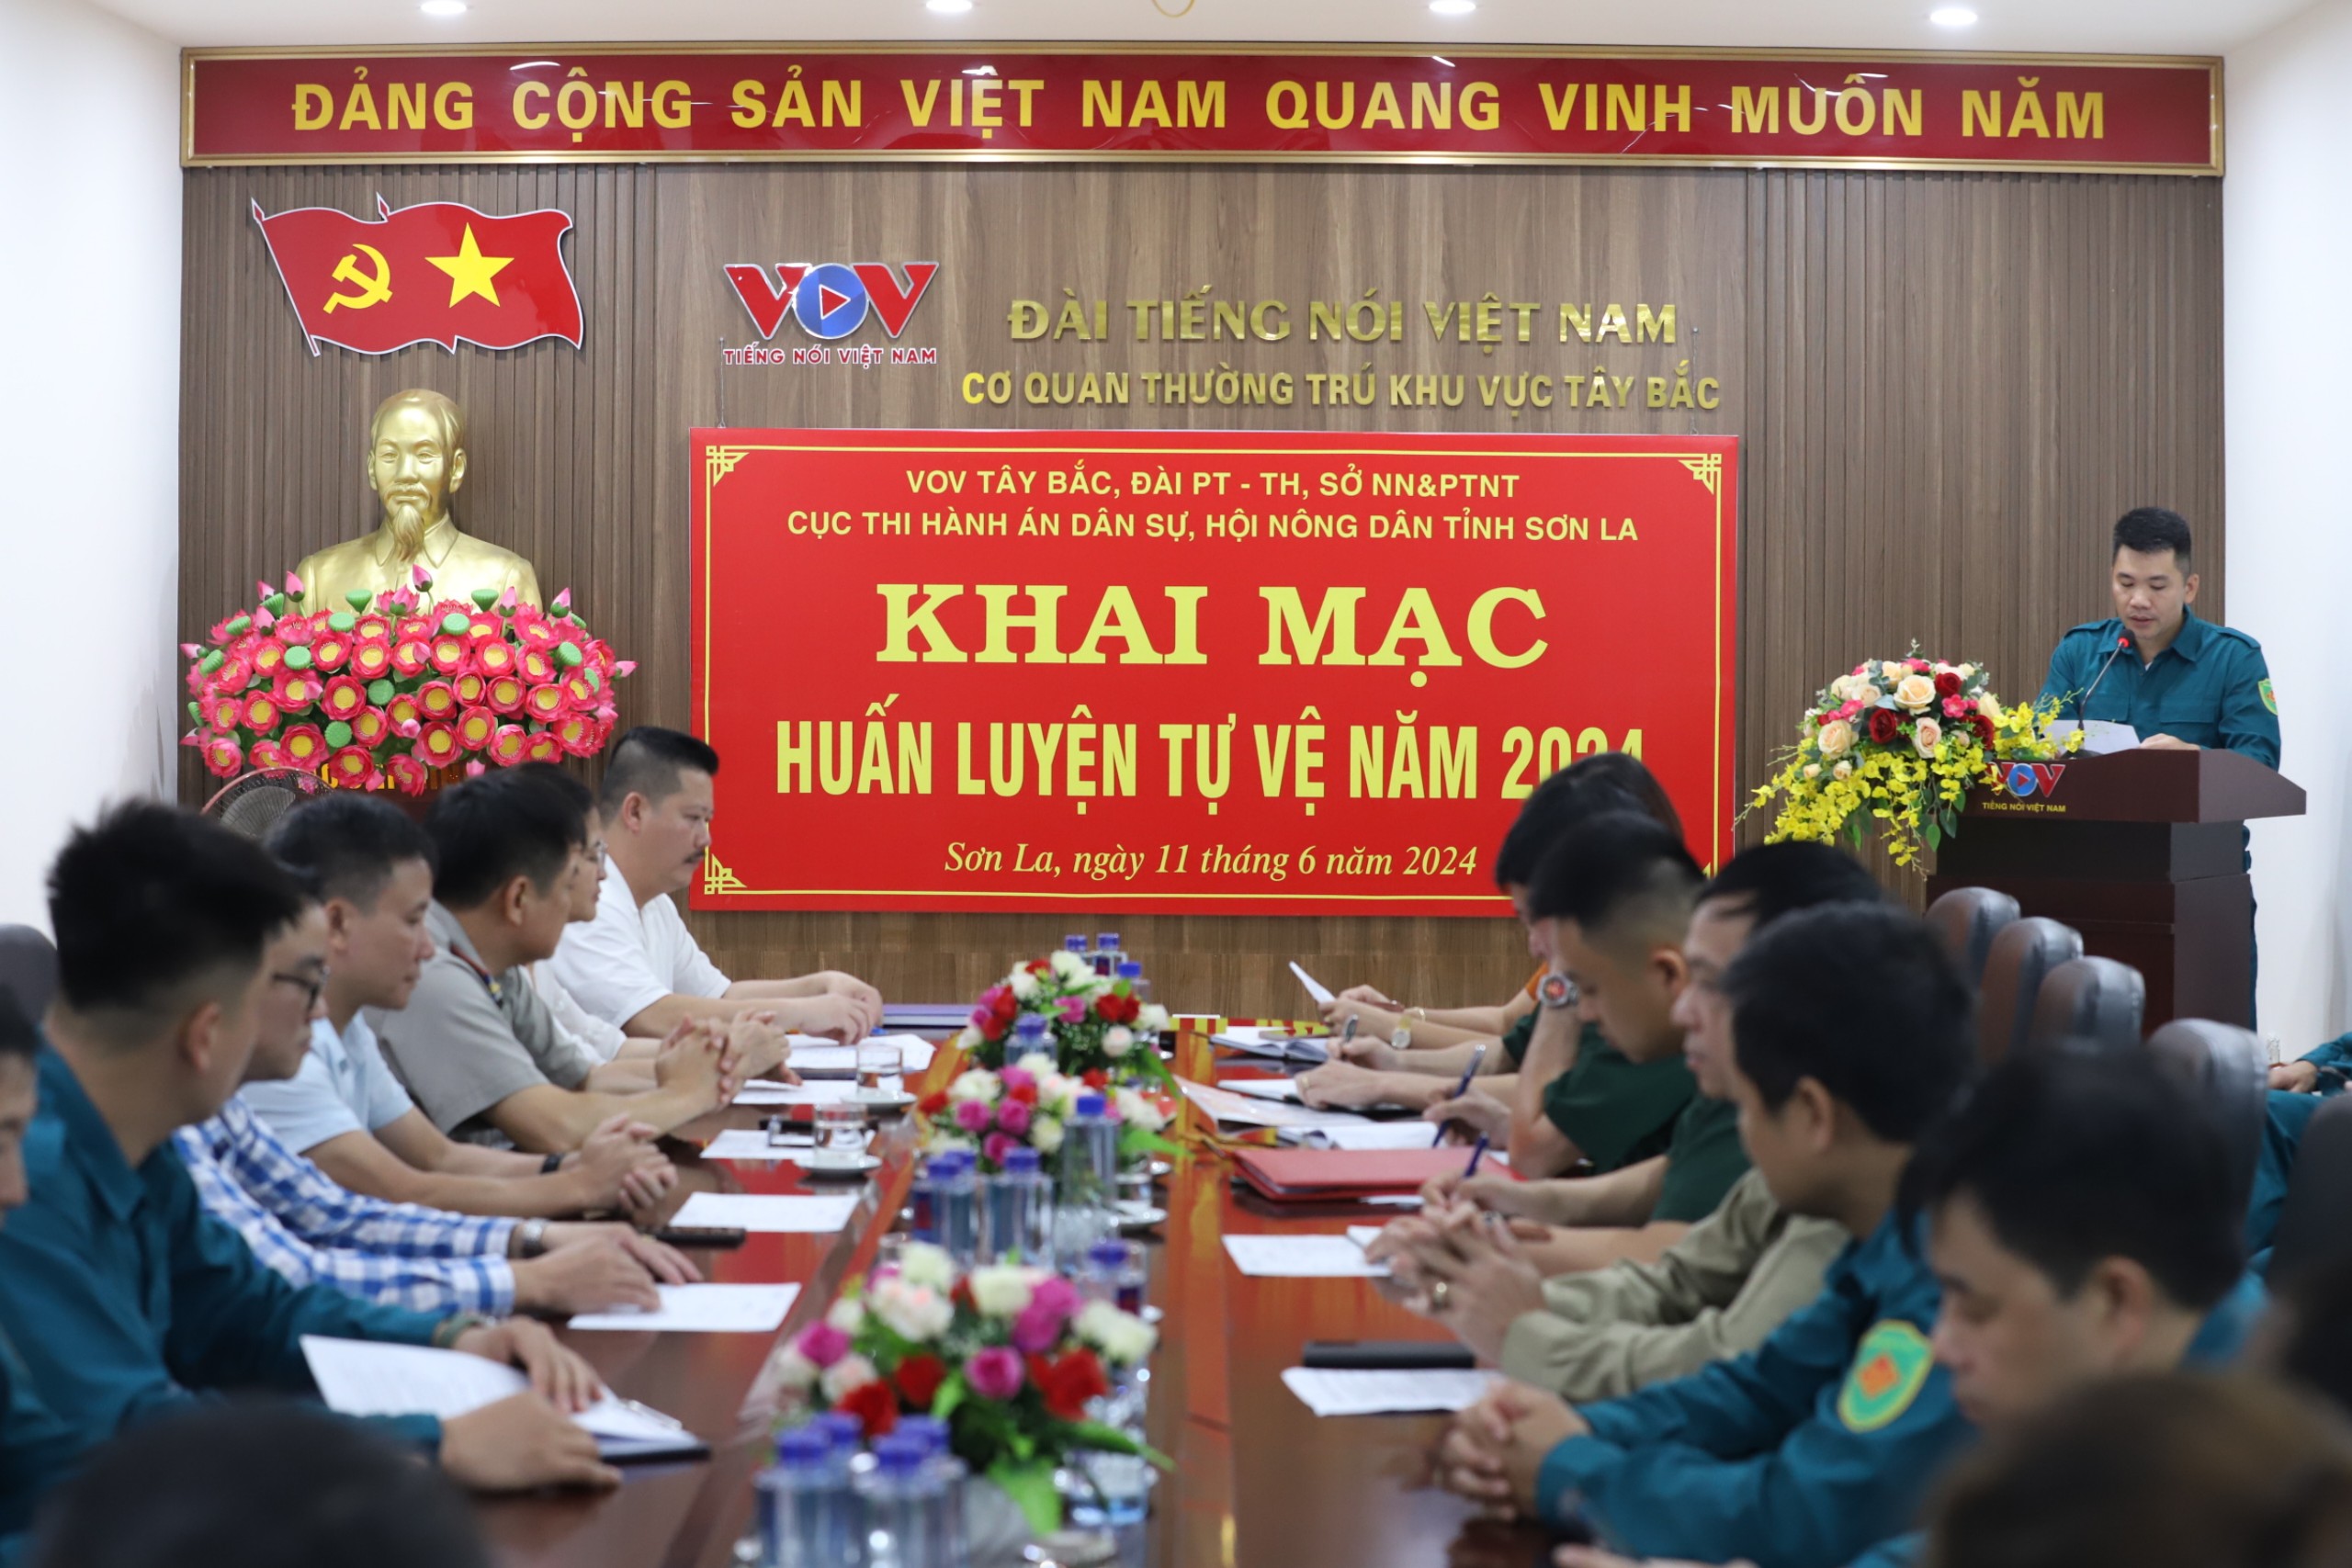 Tiểu đội Tự vệ Cục THADS tỉnh Sơn La phối hợp huấn luyện tự vệ năm 2024 2